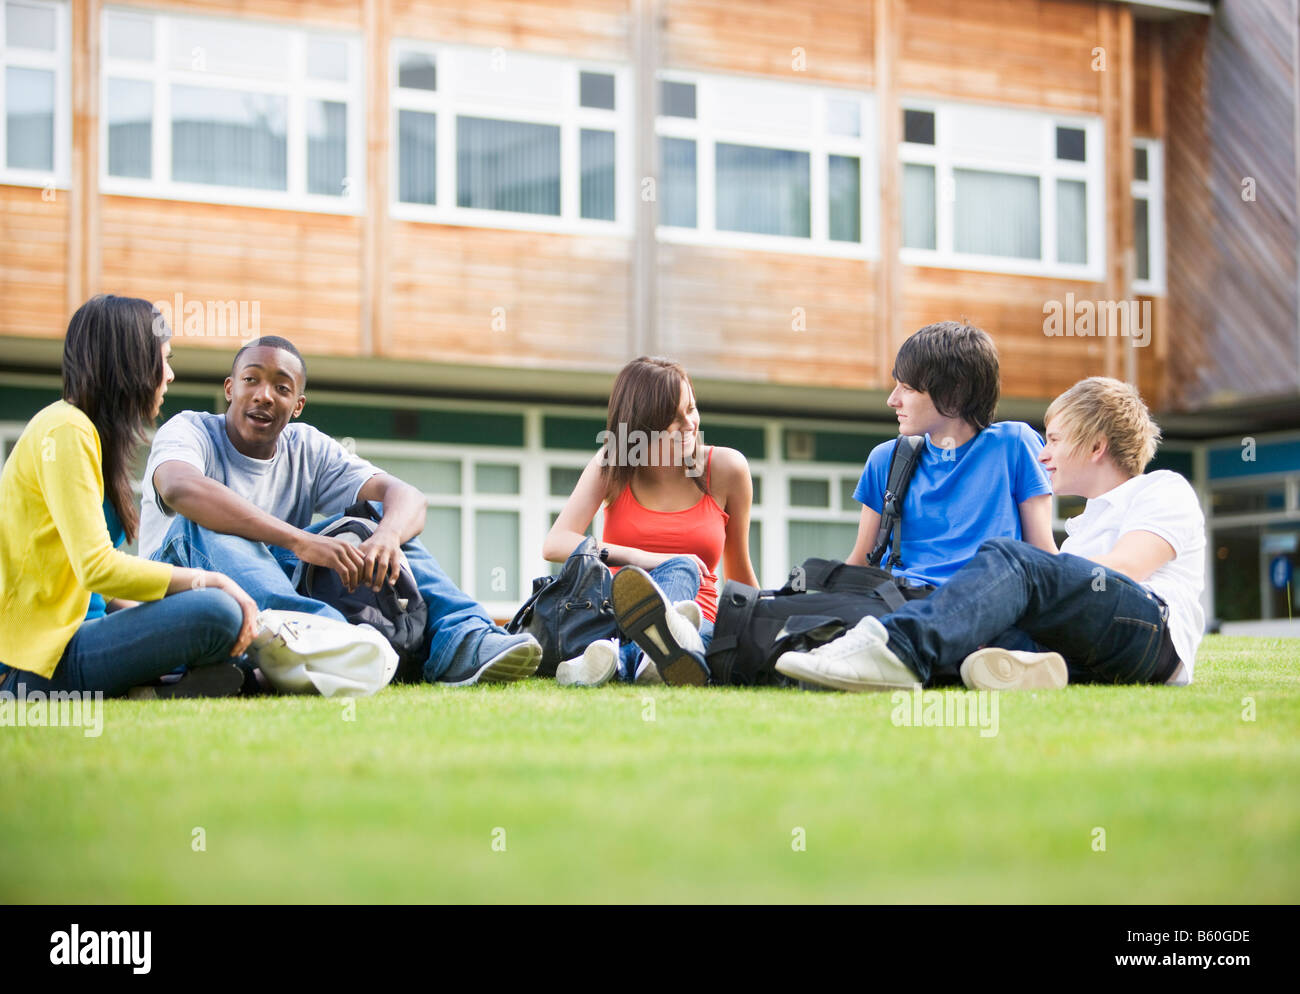 Cinco estudiantes sentados al aire libre en el césped hablando Foto de stock